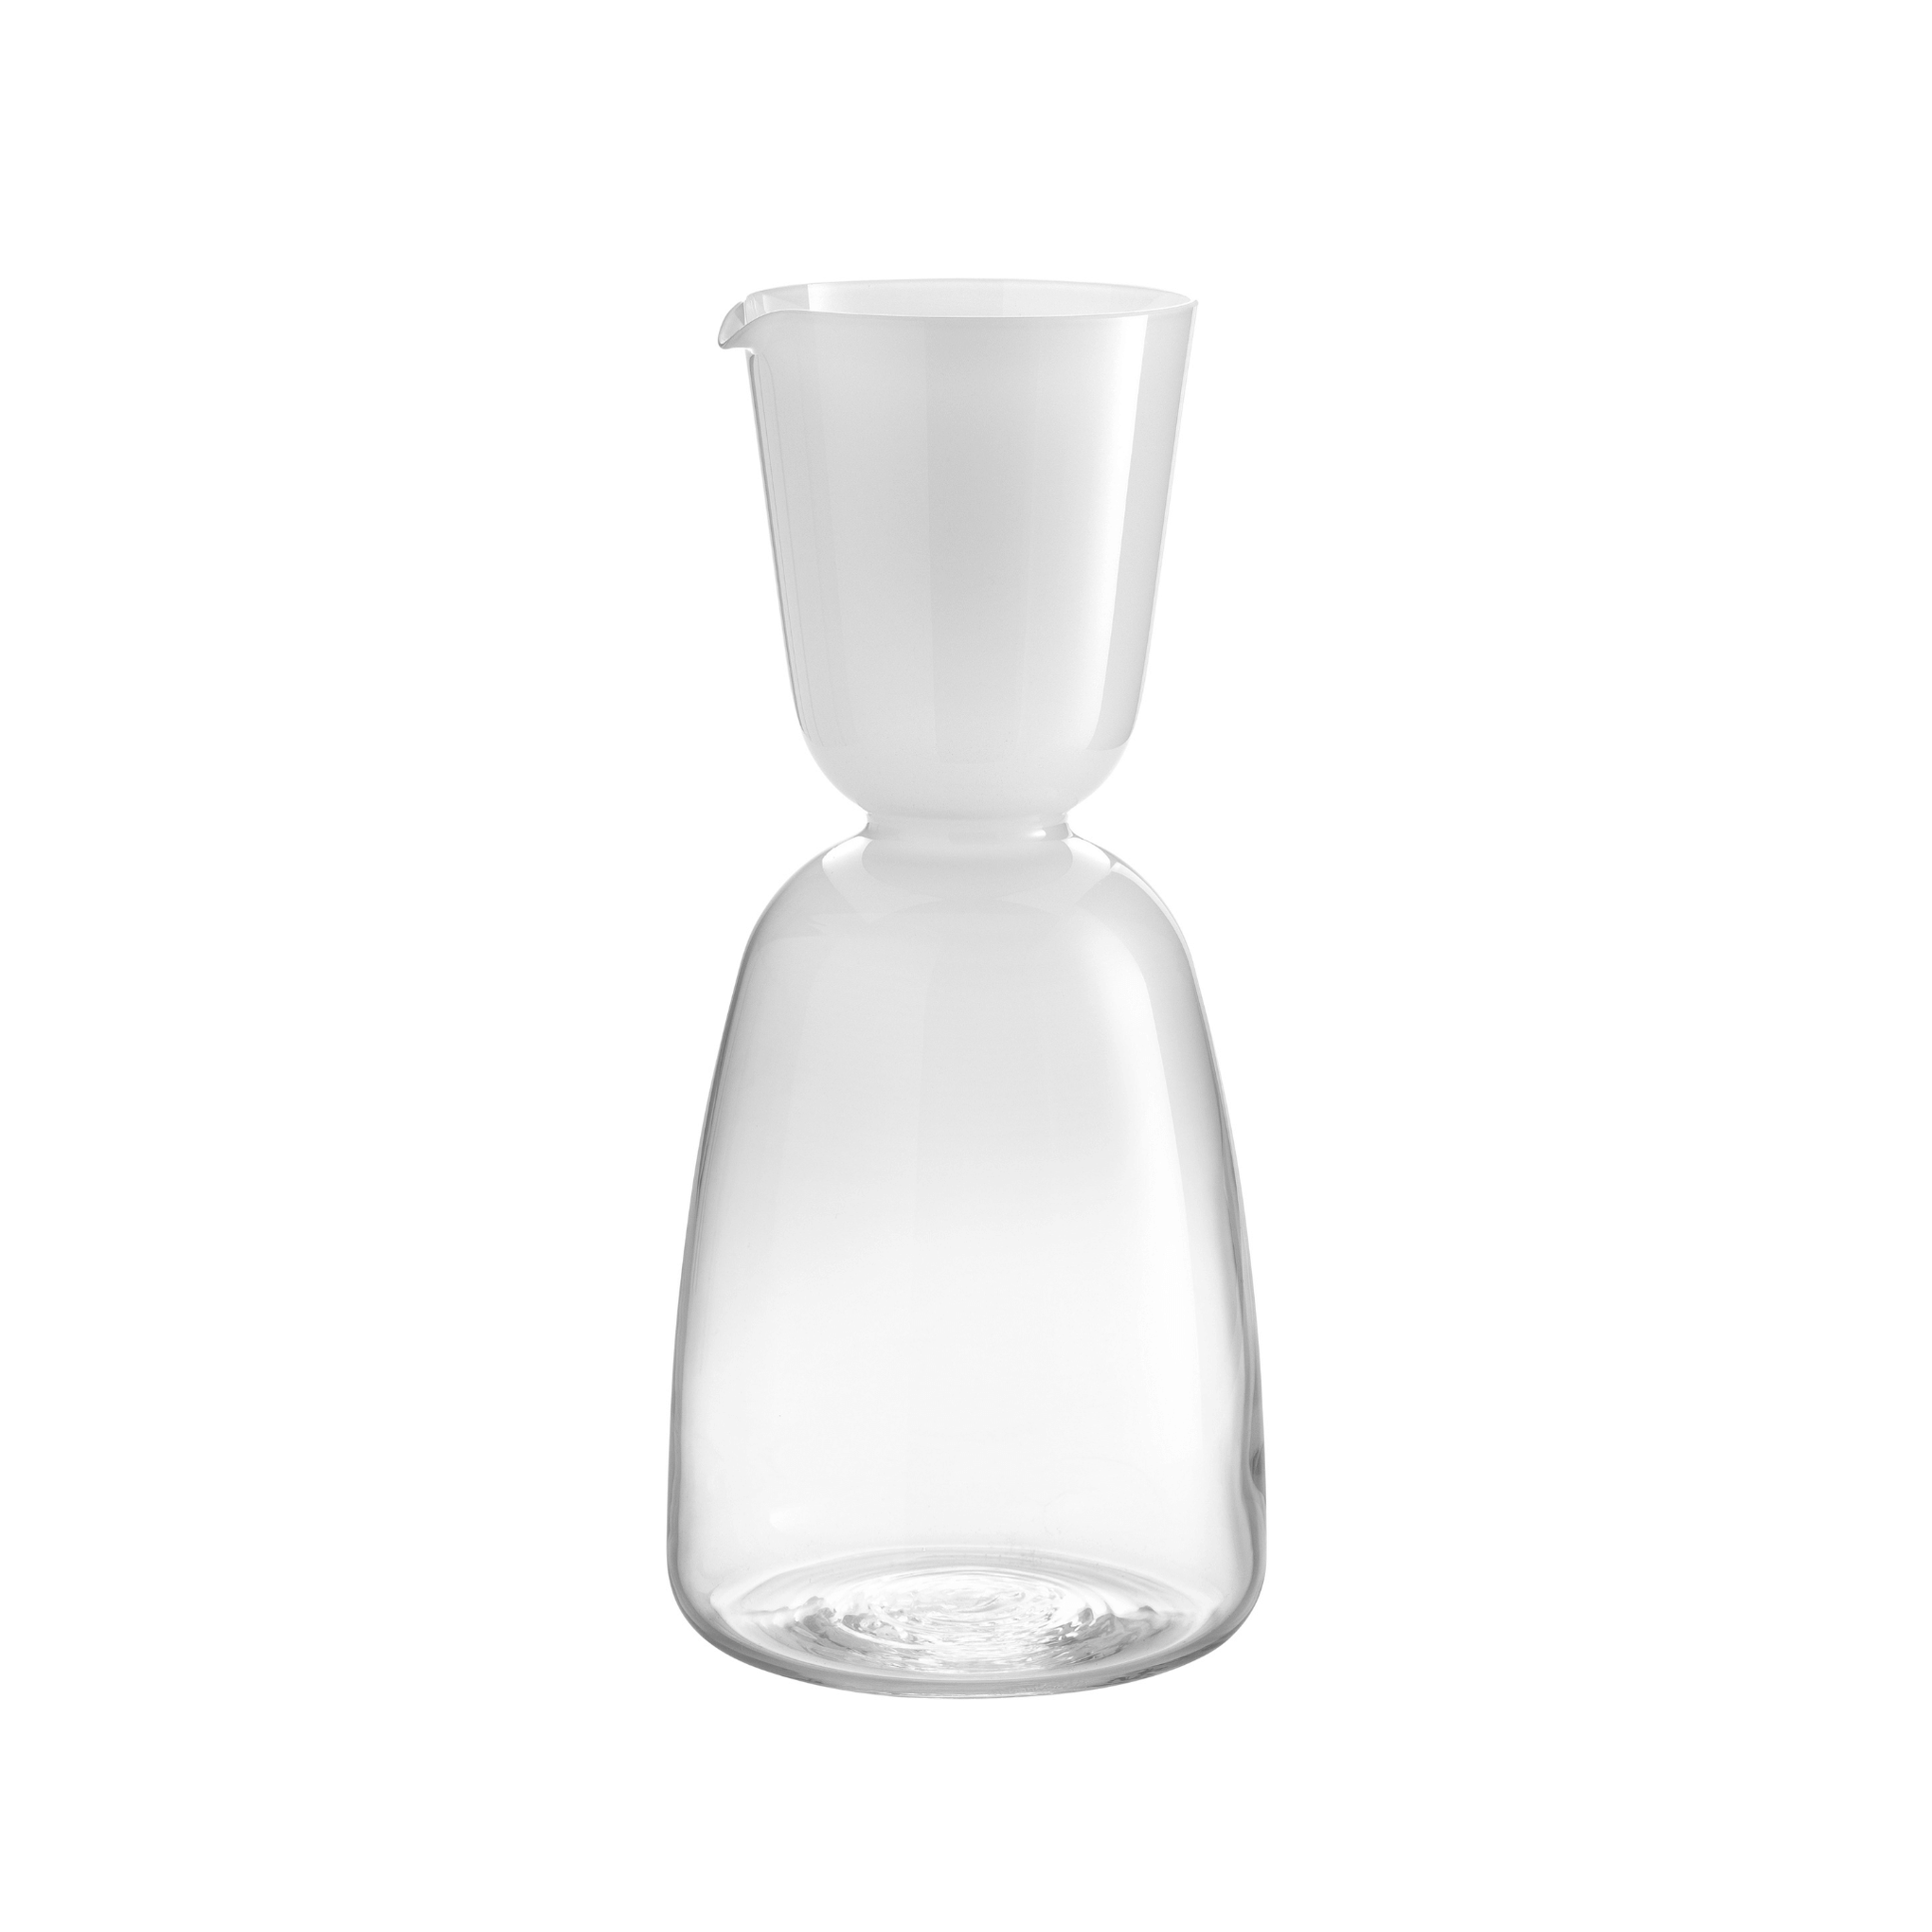 Nason Moretti Murano glass pitcher white